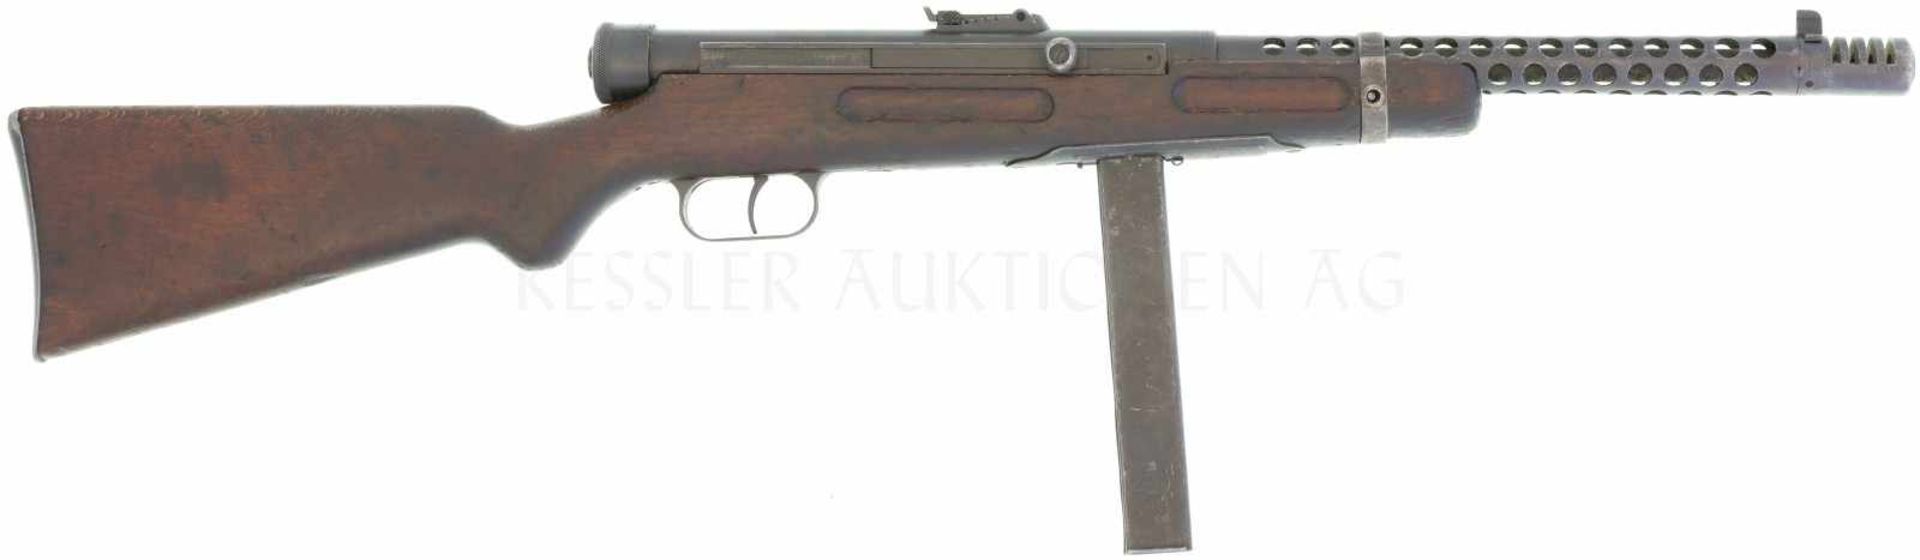 Maschinenpistole, Beretta Mod. 38A, nach alter CH Norm zum Halbautomaten geändert. Kal. 9mmP LL